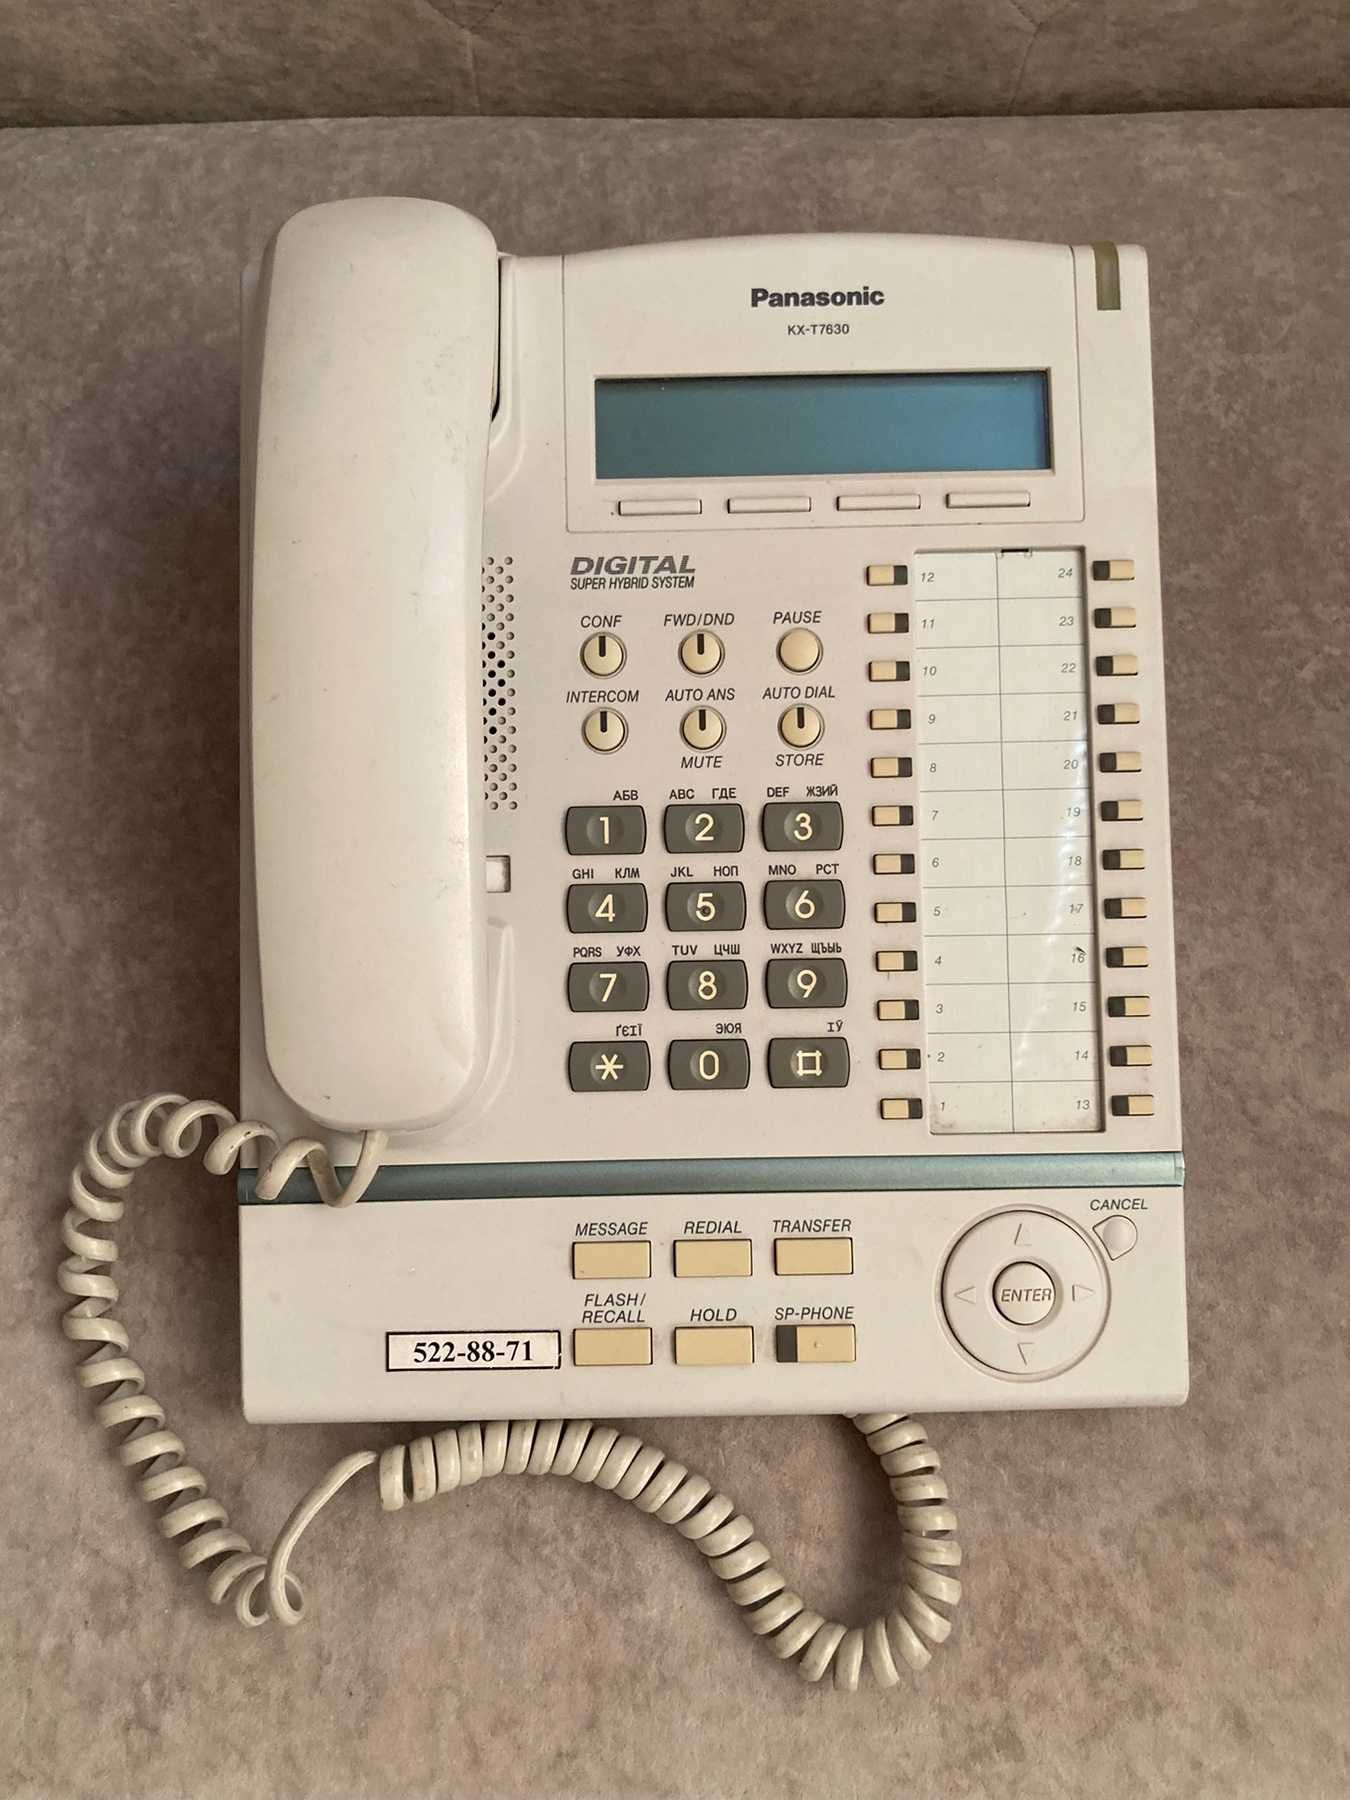 Системный телефон Panasonic KX-T7630, возможно на з/п